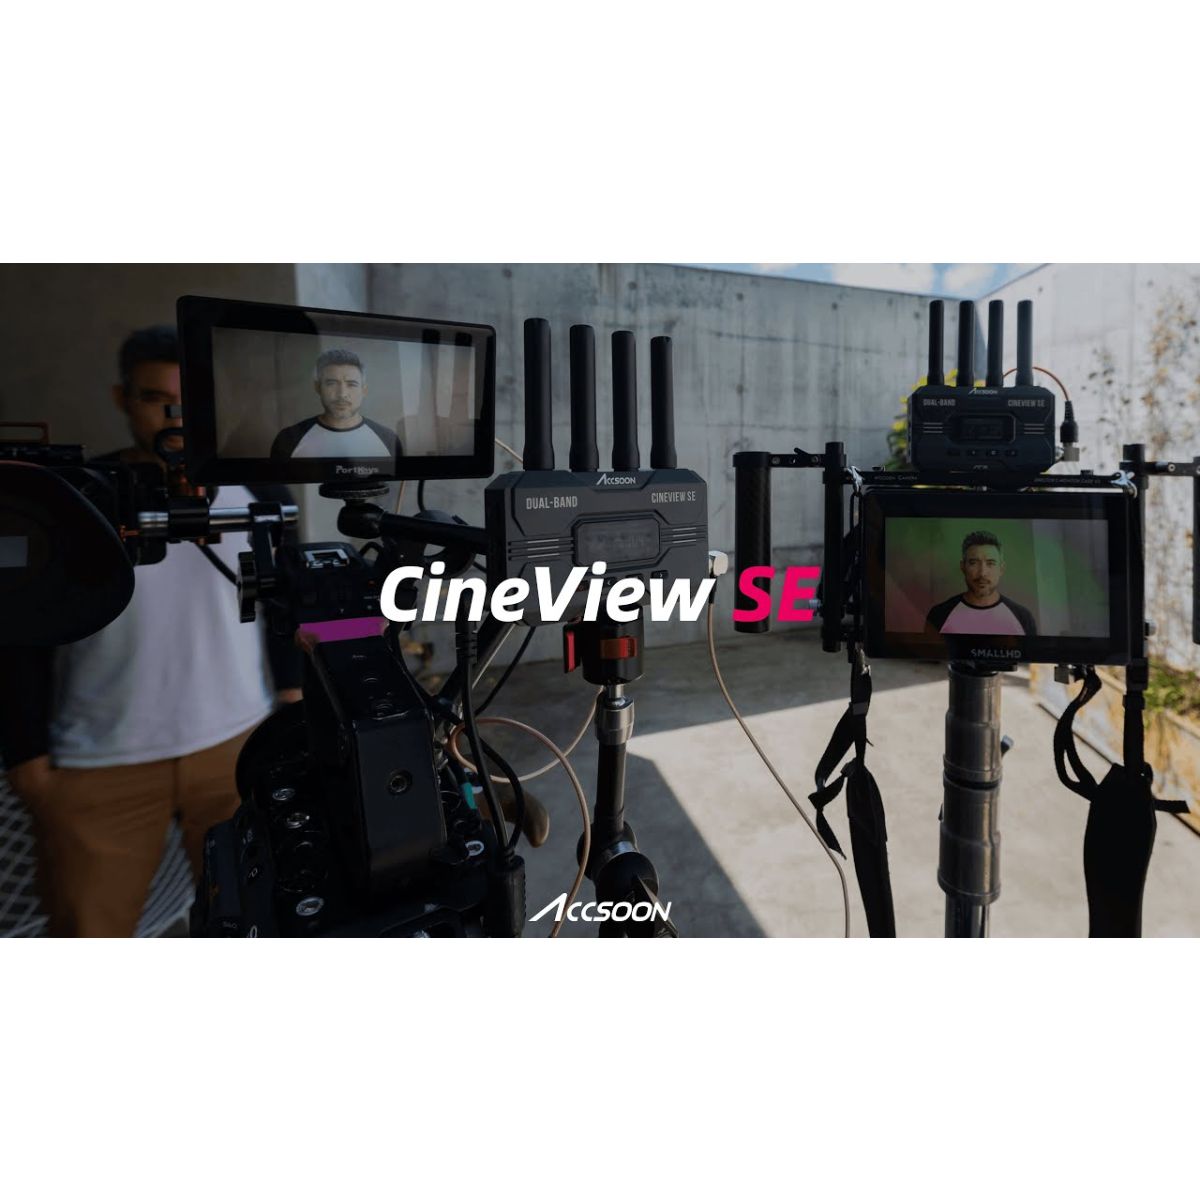 Accsoon CineView SE Sender / Empfänger System